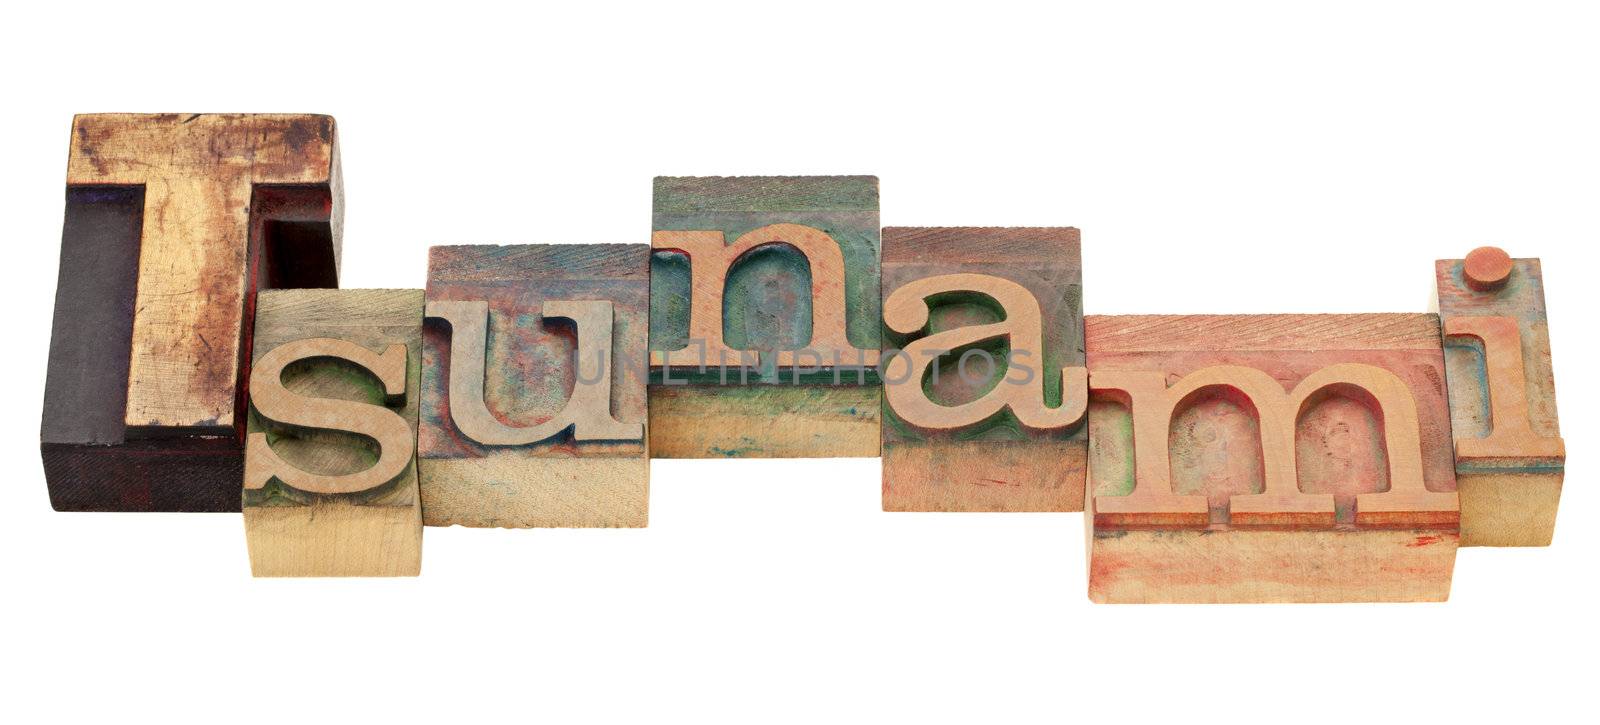 tsunami word in letterpress type by PixelsAway